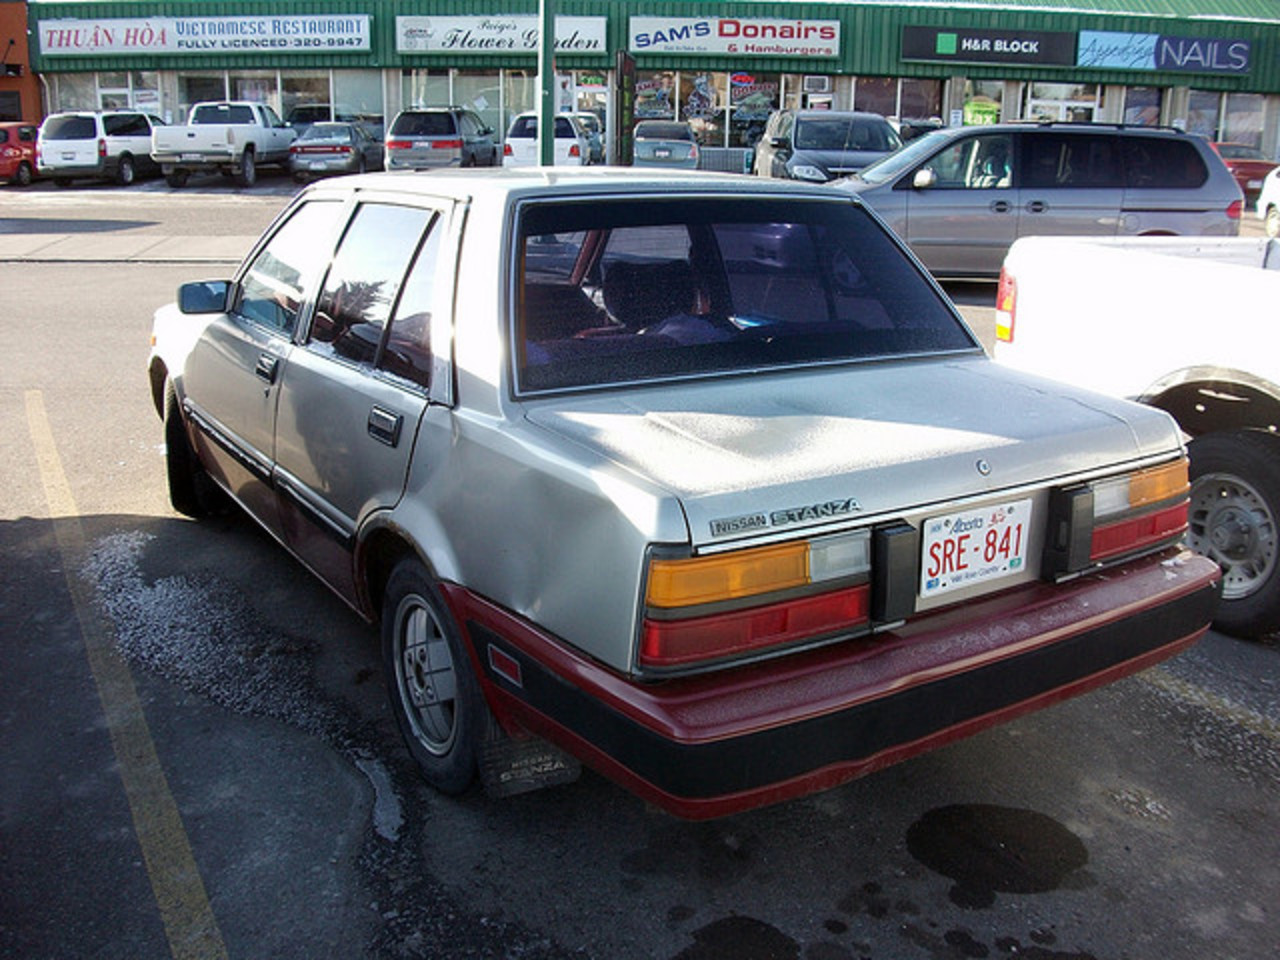 1985 Nissan Stanza | Flickr - Photo Sharing!